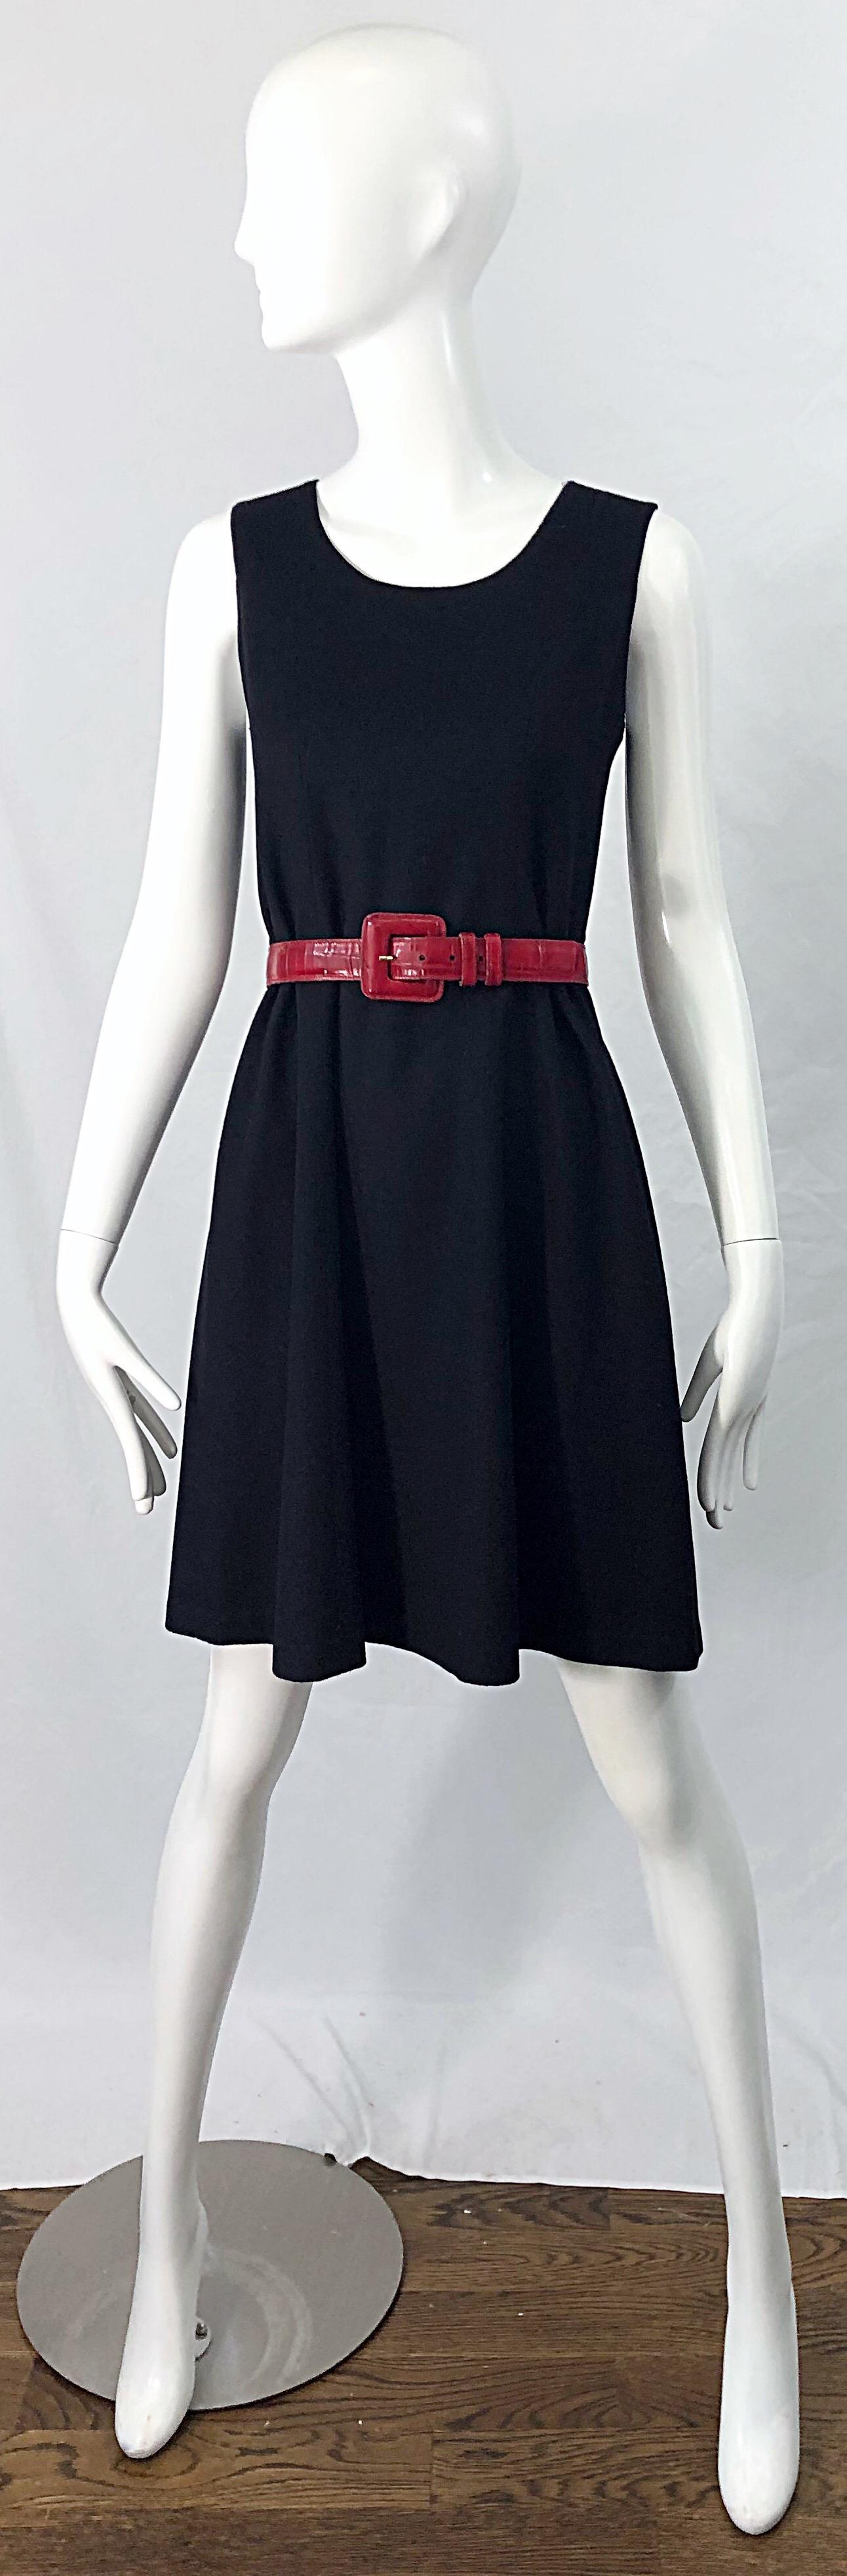 Women's 1990s Morgan Le Fay by Liliana Casbal Black Wool Minimalist Vintage 90s Dress For Sale